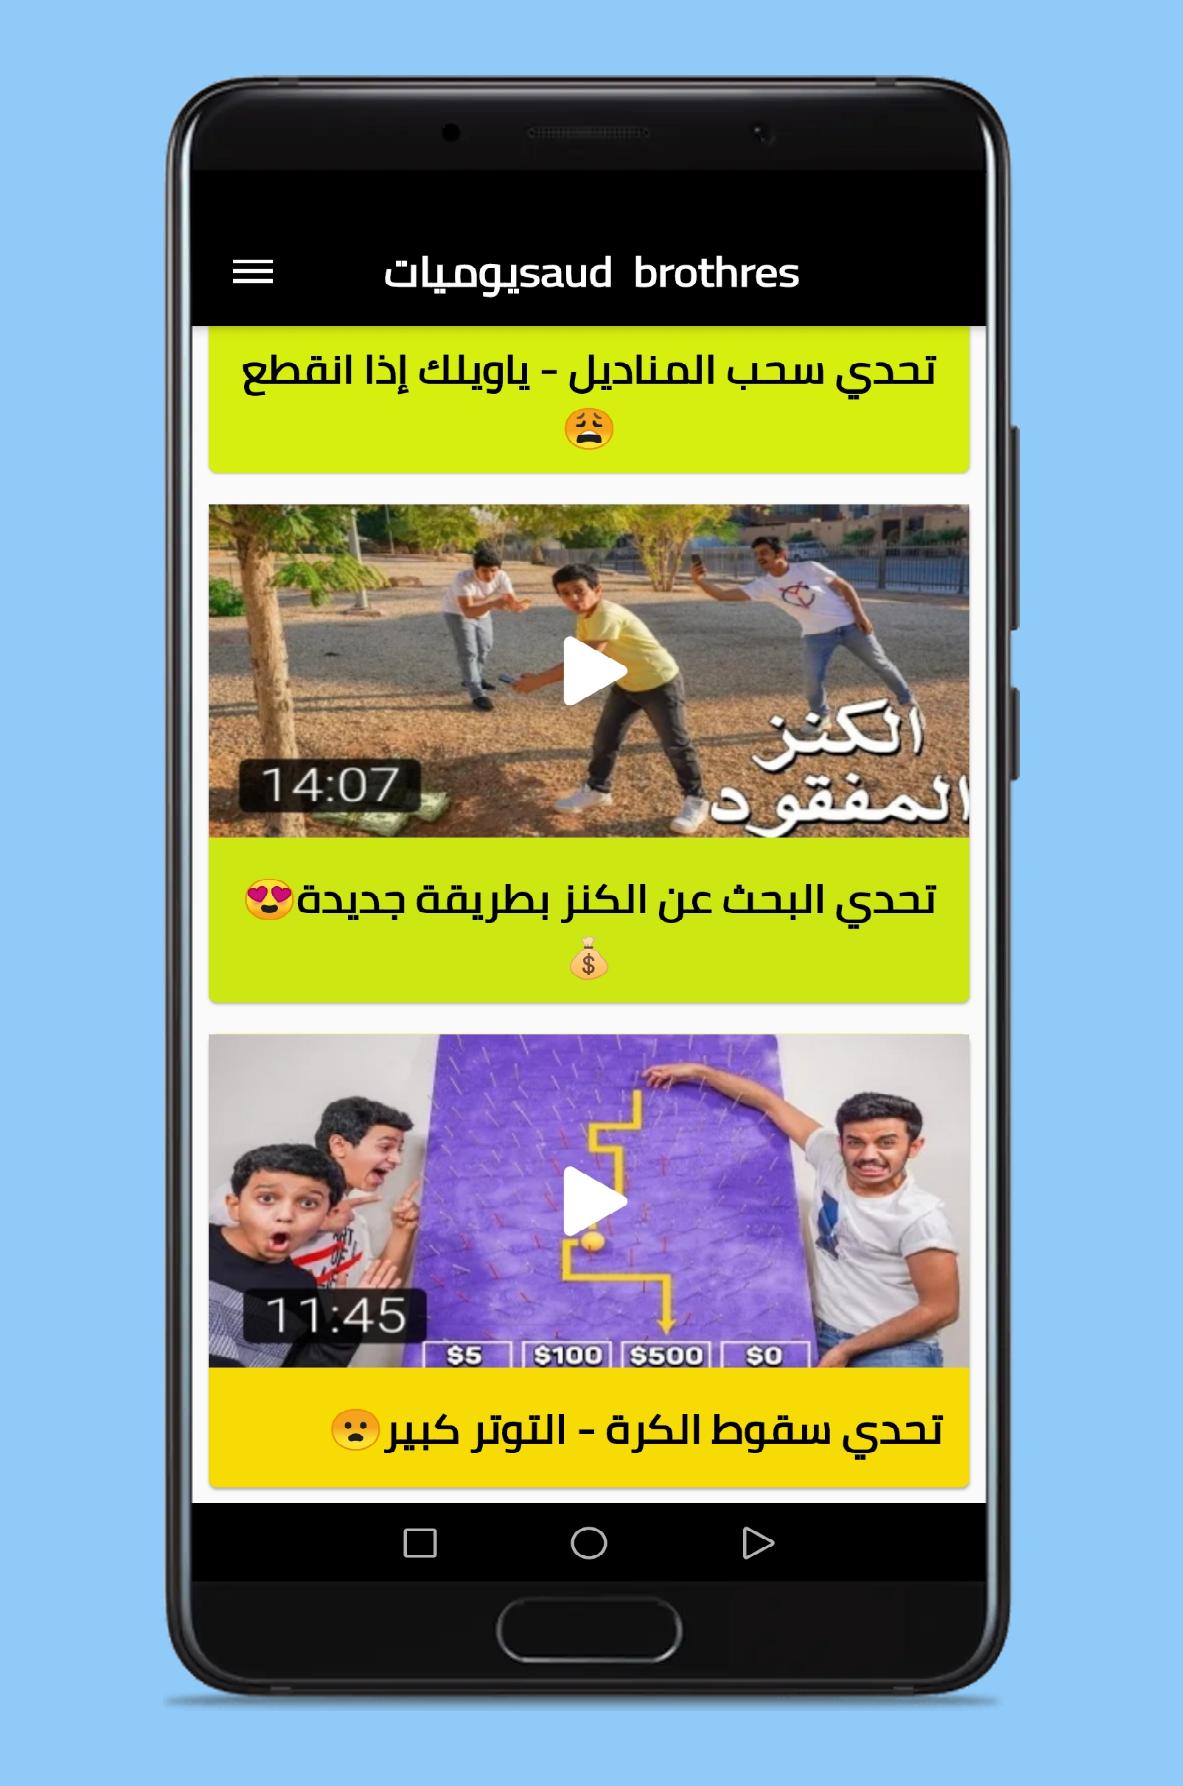 يوميات Saud brothers. APK for Android Download